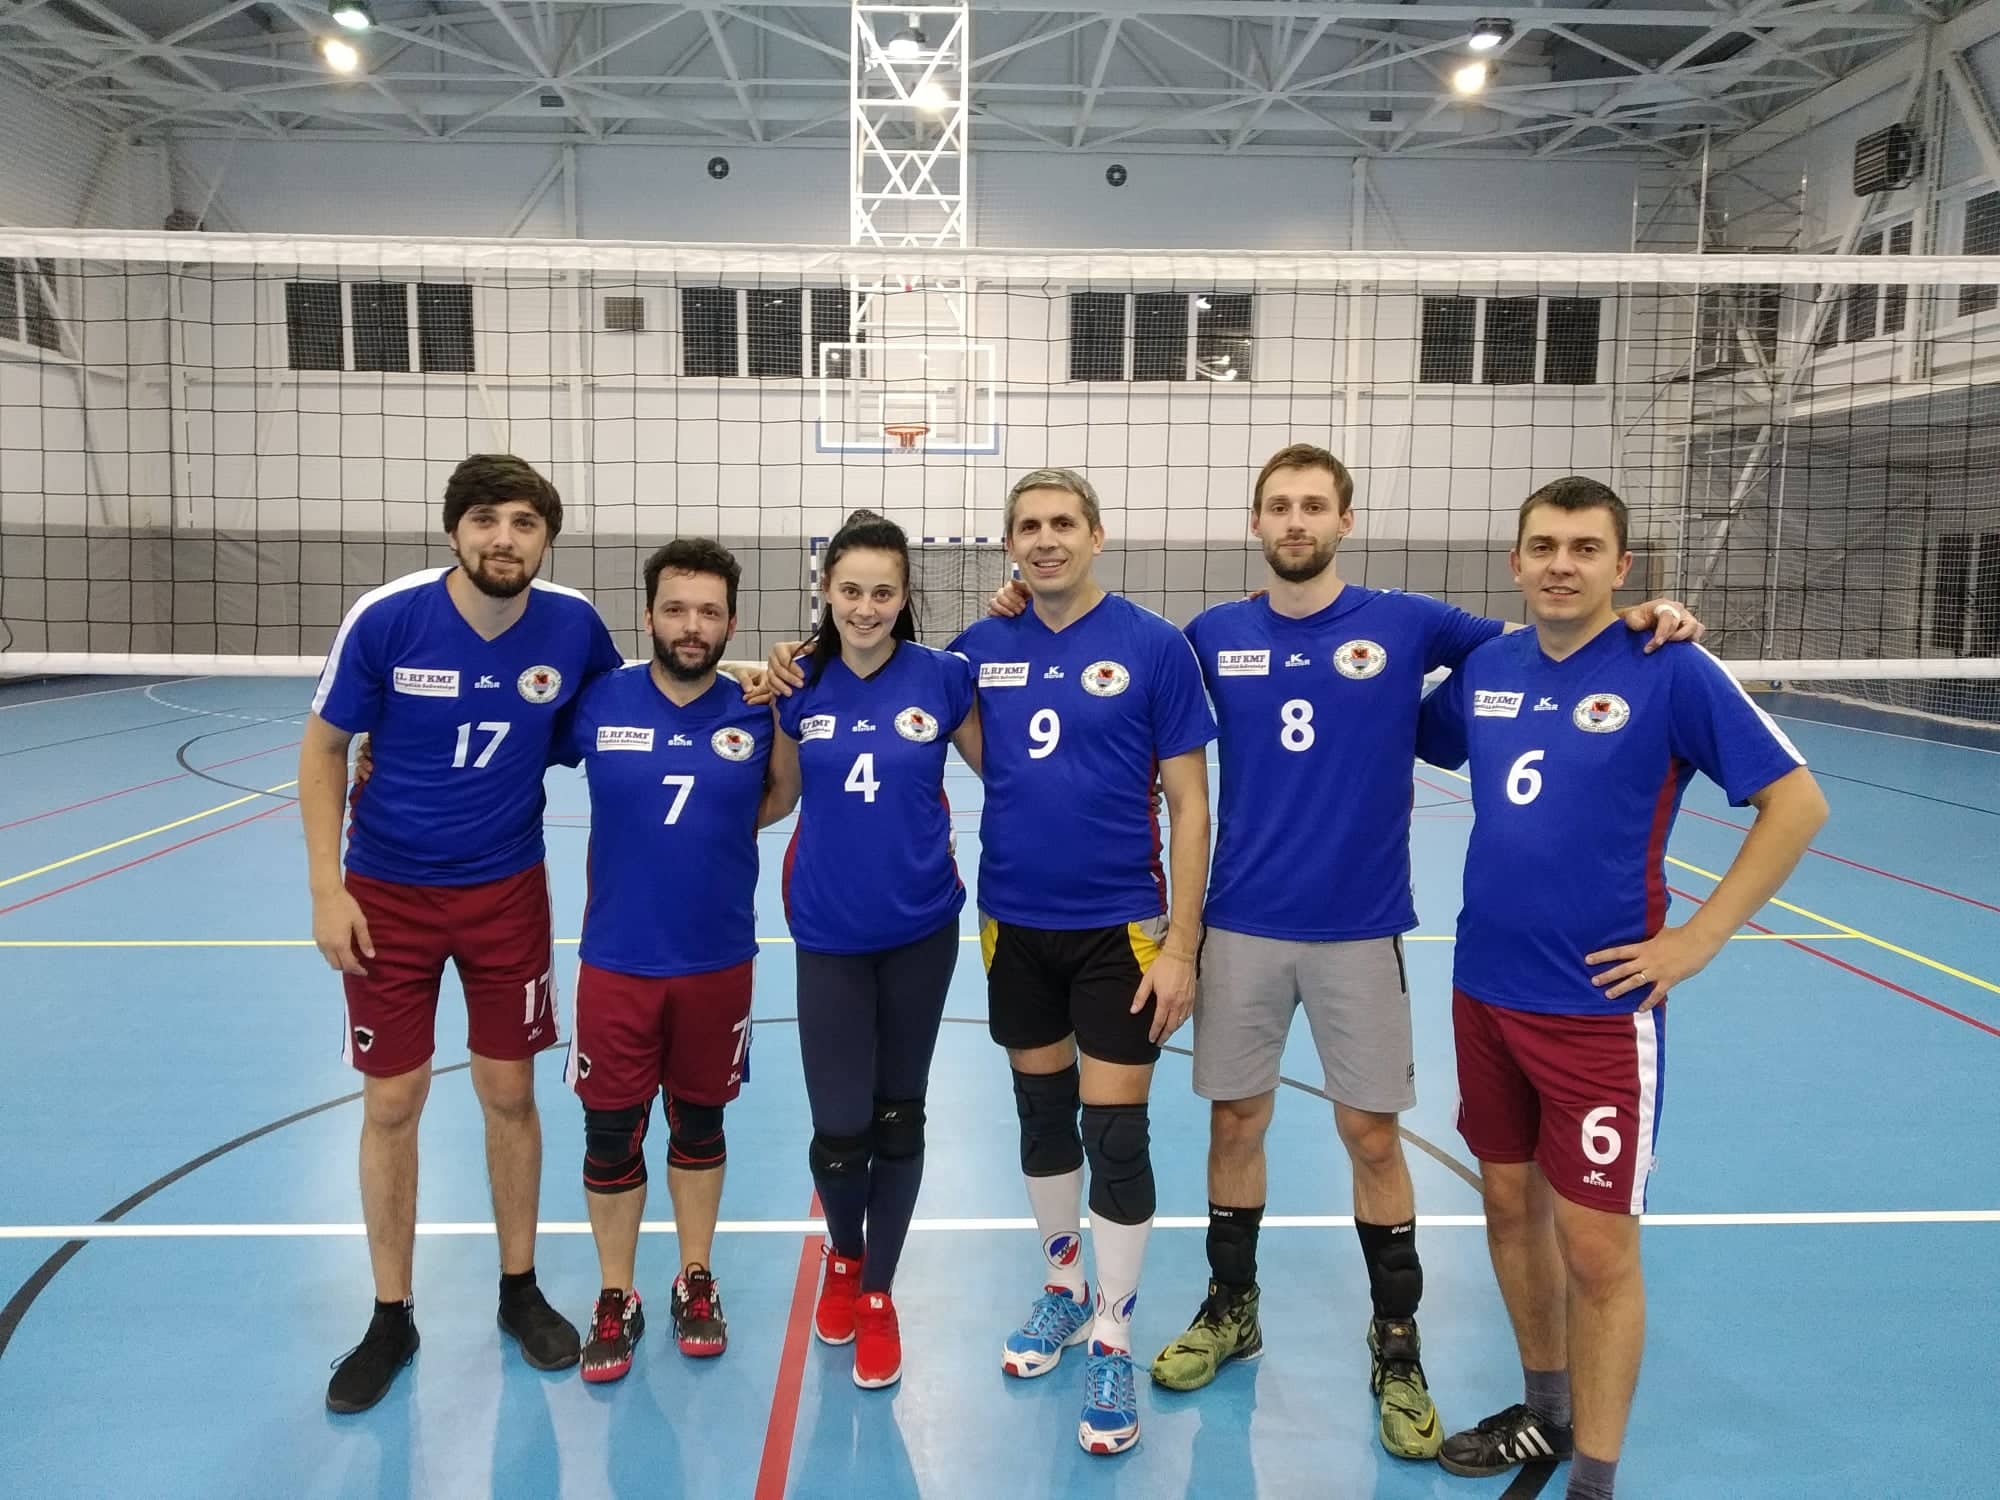 https://kmf.uz.ua/hu/hirek/sajat-mezeket-kaptak-az-oregdiak-sportcsapat-tagjai/